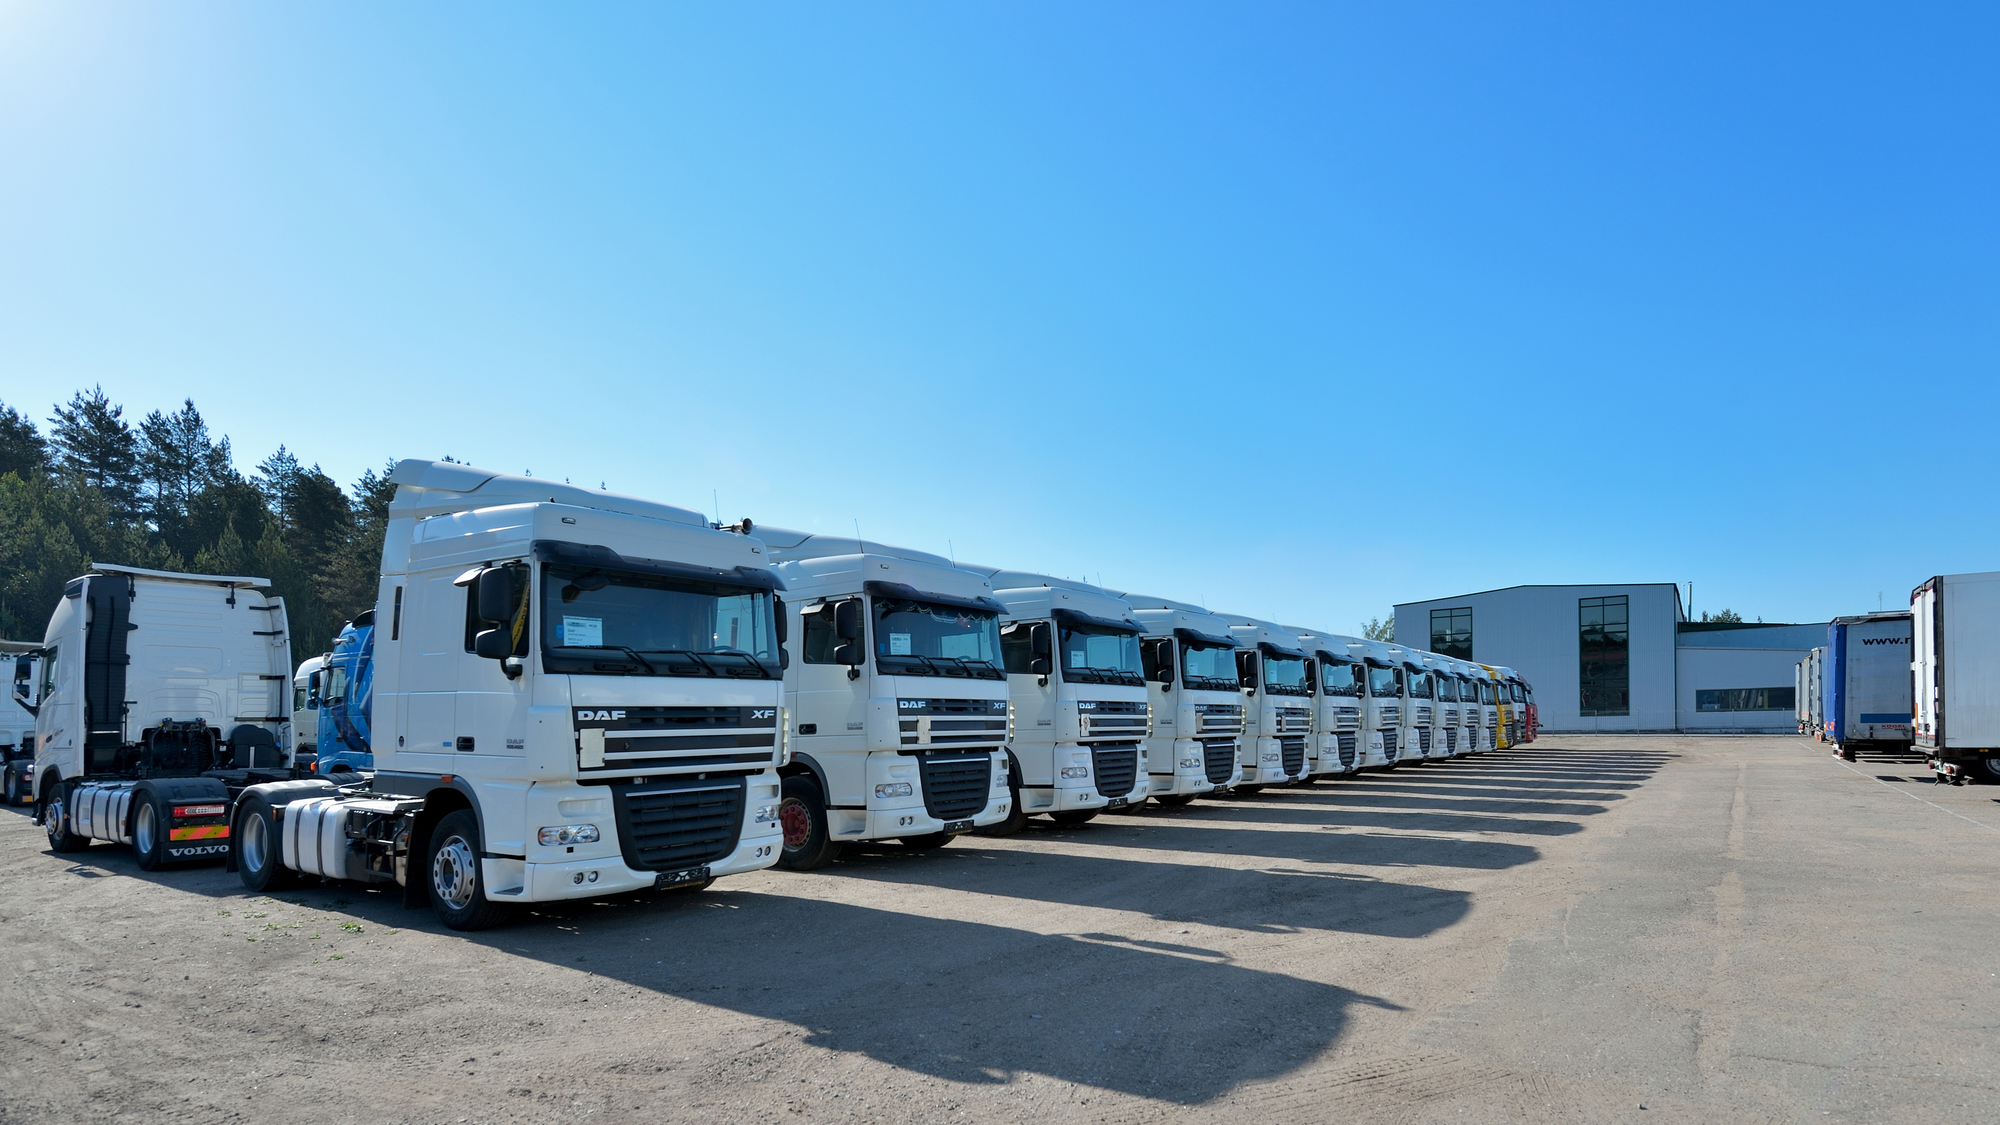 UAB 'Trucks Market' undefined: photos 7